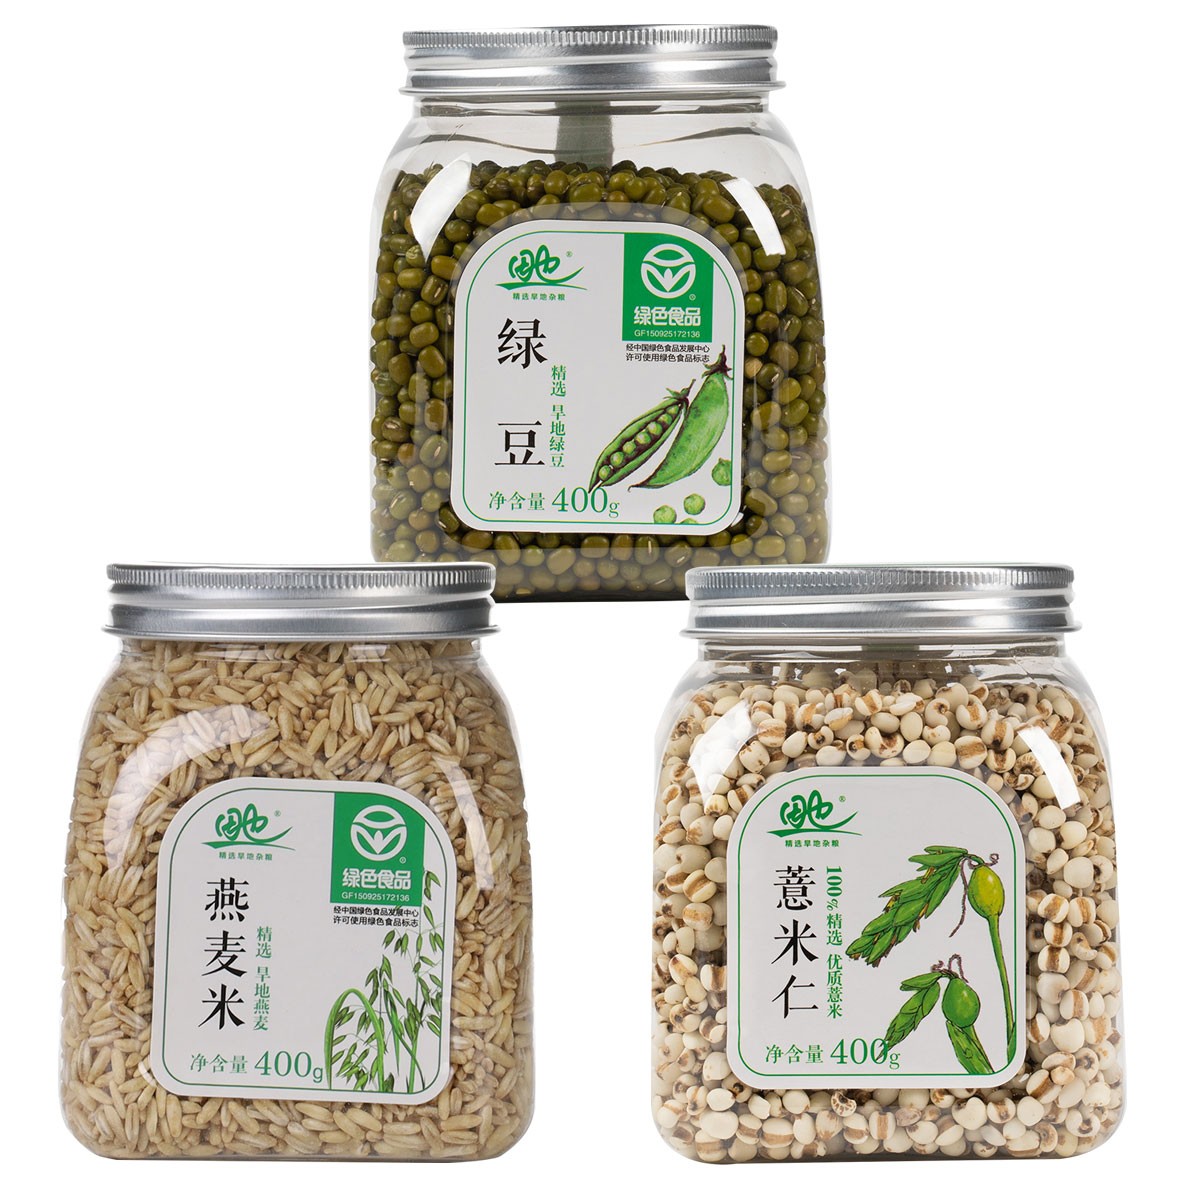 内蒙古田也燕麦米+薏米+绿豆组合(400g*3罐)_ID9